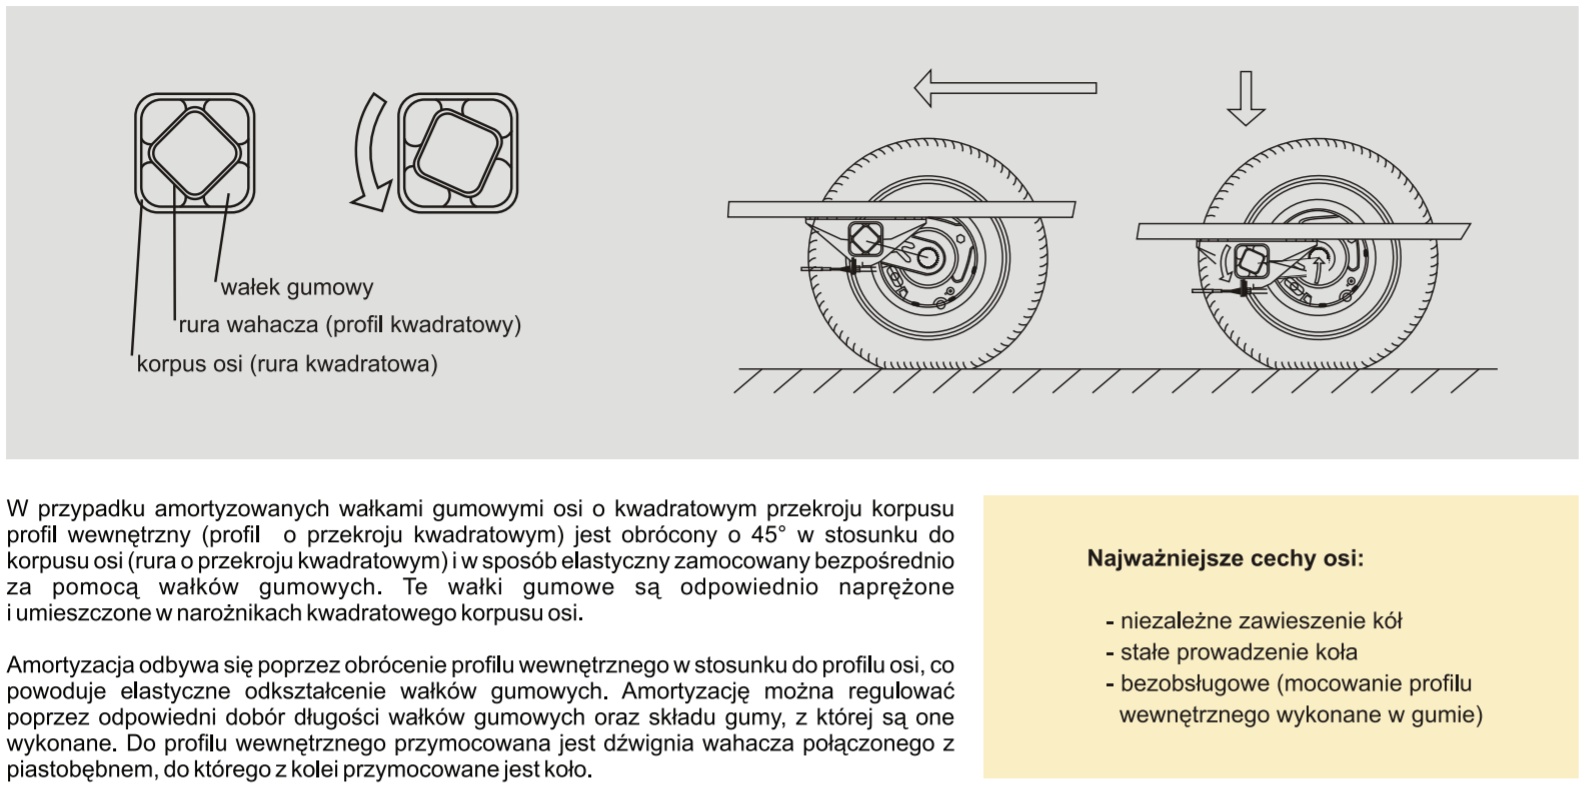 Zasada działania amortyzacji na wałkach gumowych w osiach o kwadratowym przekroju korpusu